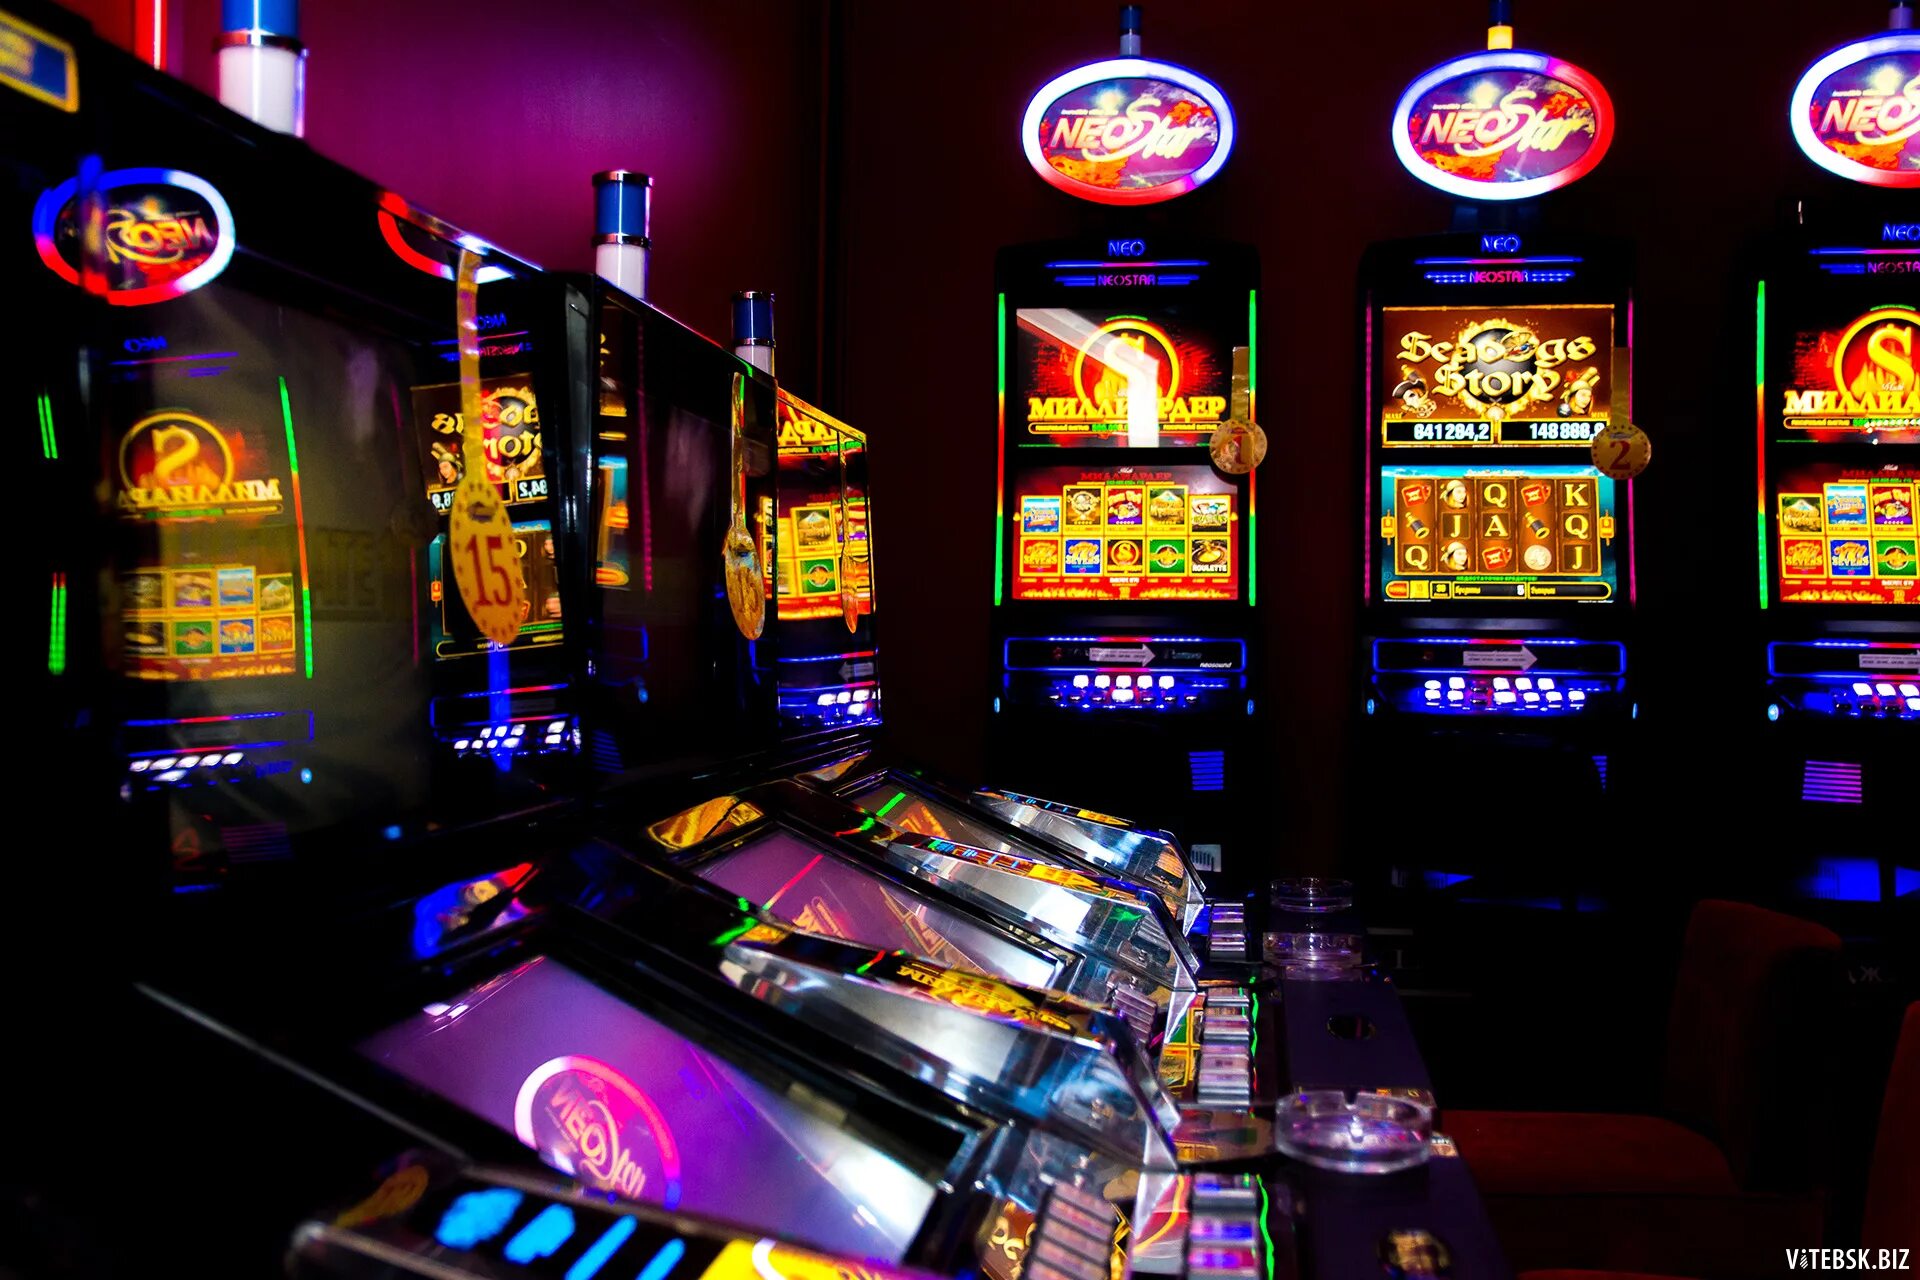 Игровые автоматы рейтинг новых лучших strahov art. Слотосфера игровые автоматы казино. Игровой зал 777 зал популярных игровых аппаратов. Азартные игровые автоматы гаминатор. Название игровых автоматов.